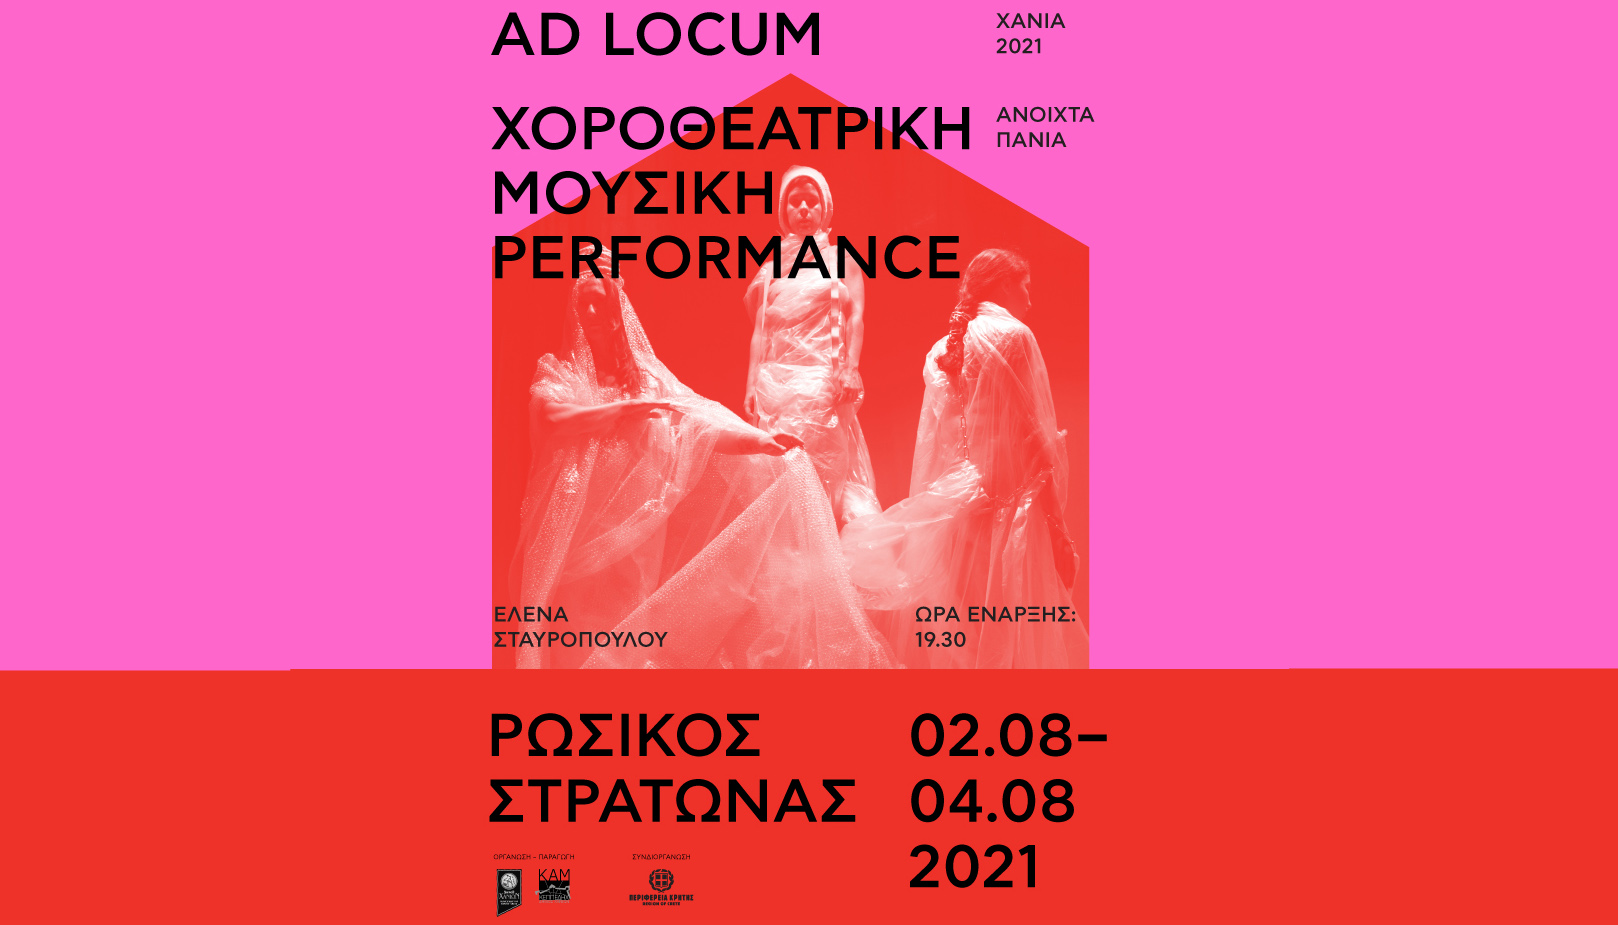 Ανοιχτά Πανιά 2021: Performance σύγχρονου χορού, χοροθεάτρου και μουσικής «Ad locum»